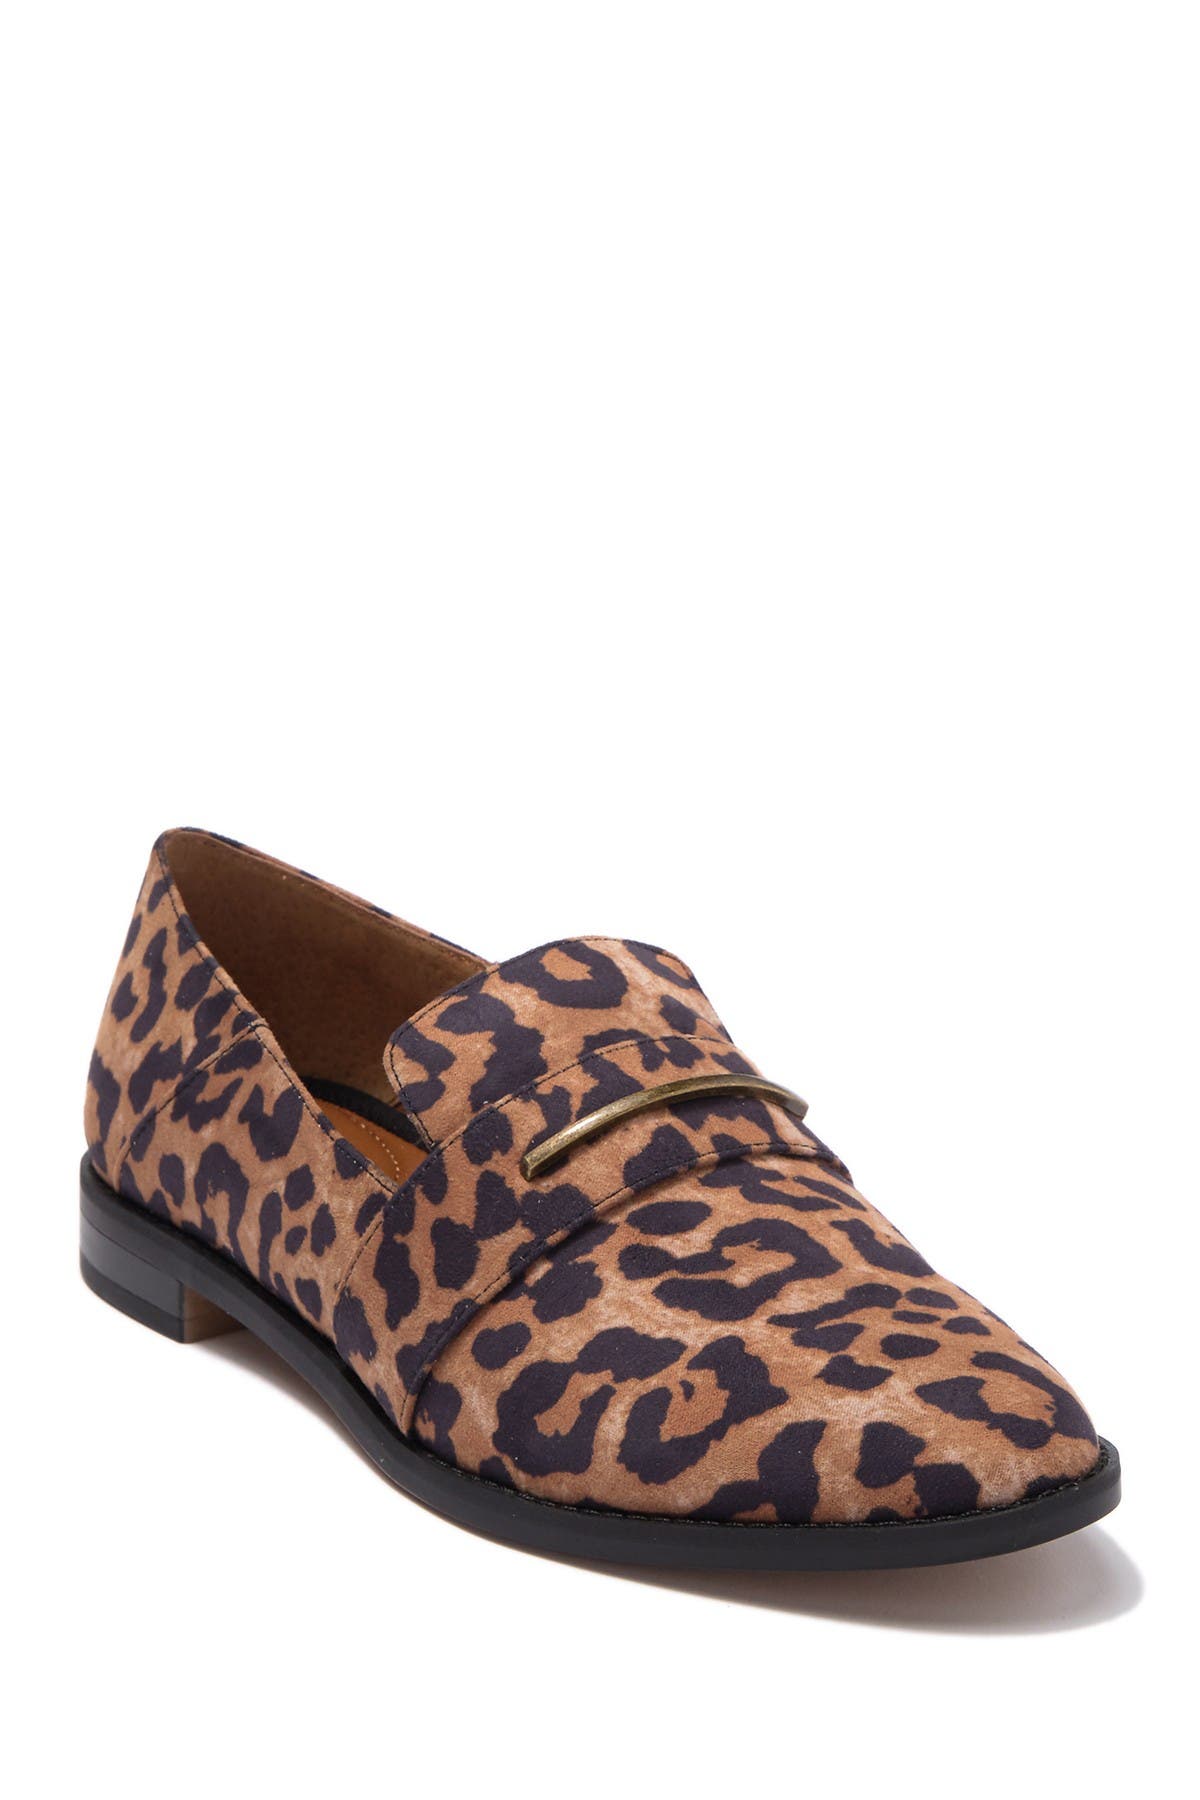 franco sarto saturn loafer leopard